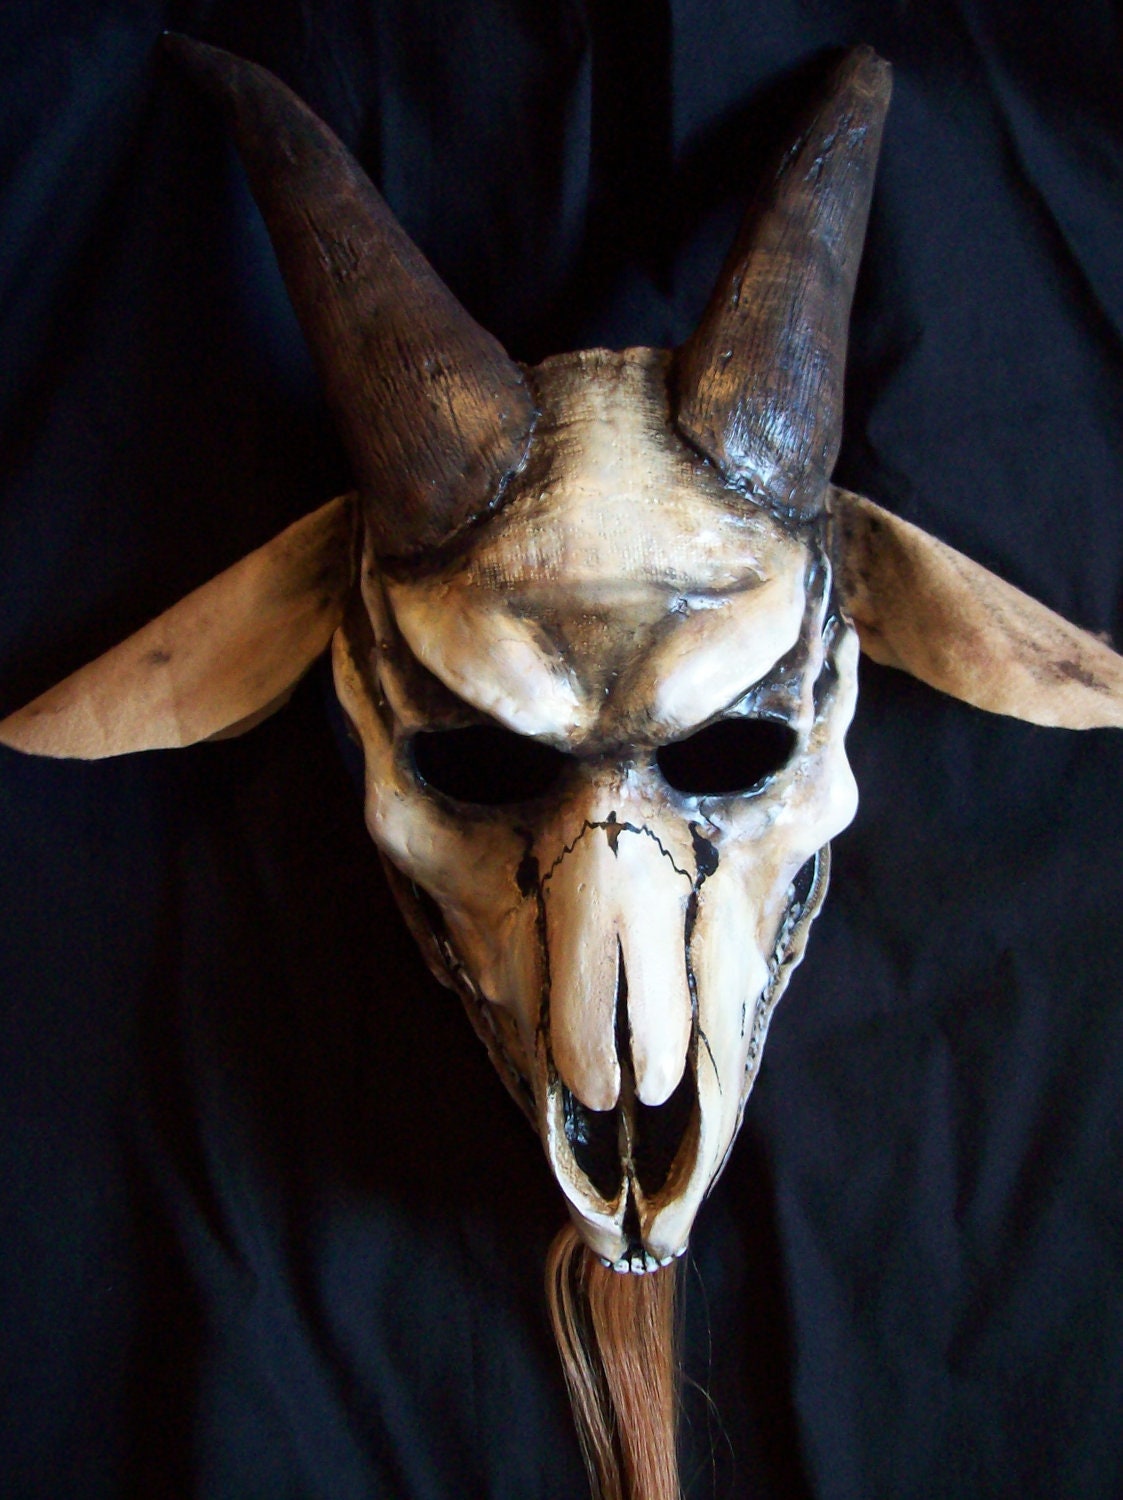 Goat skull Halloween mask by coffinhunter13 on Etsy